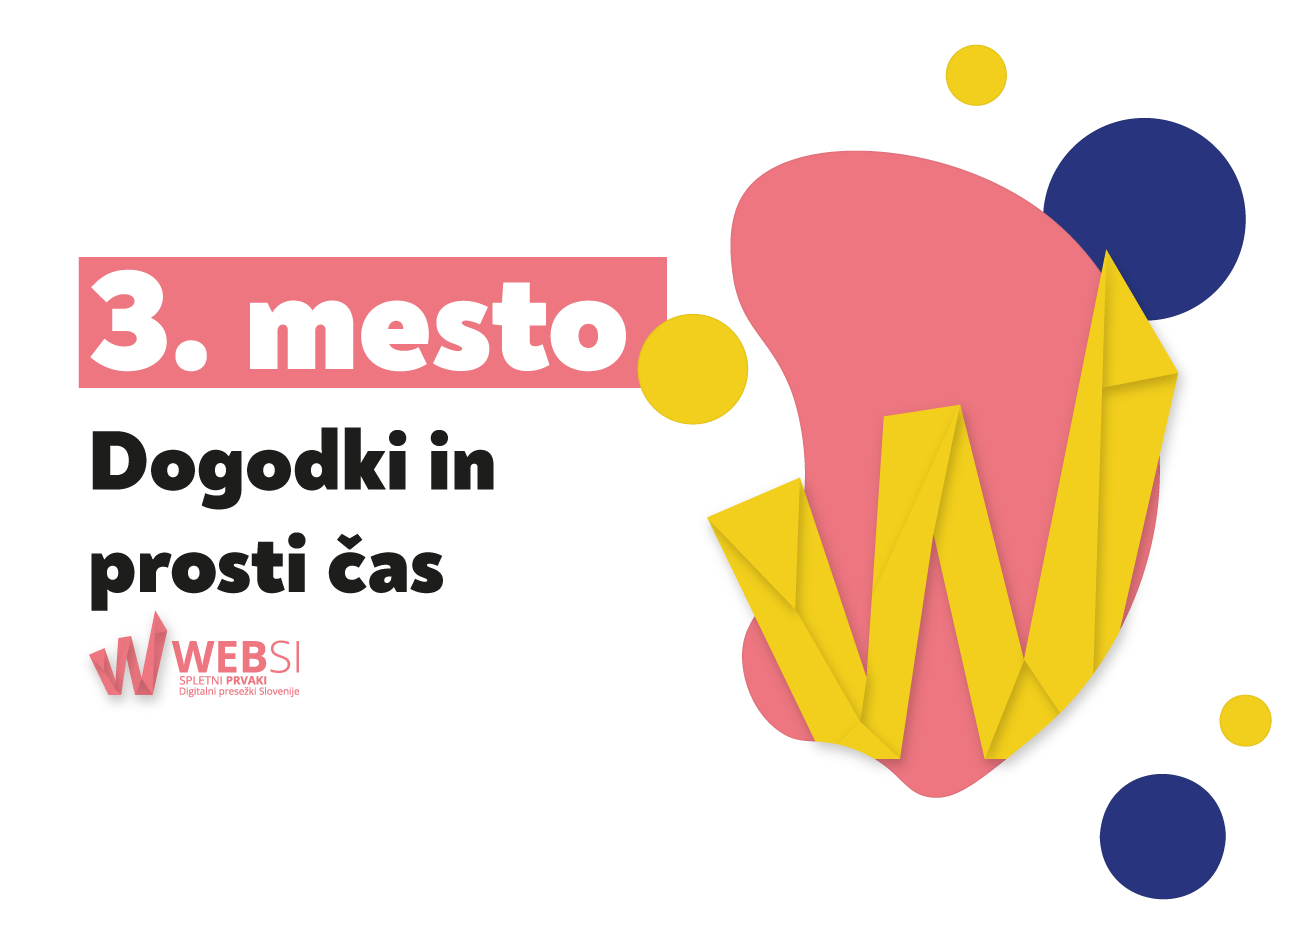 Ljubljanski maraton - Websi 3. dogodki in prosti cas